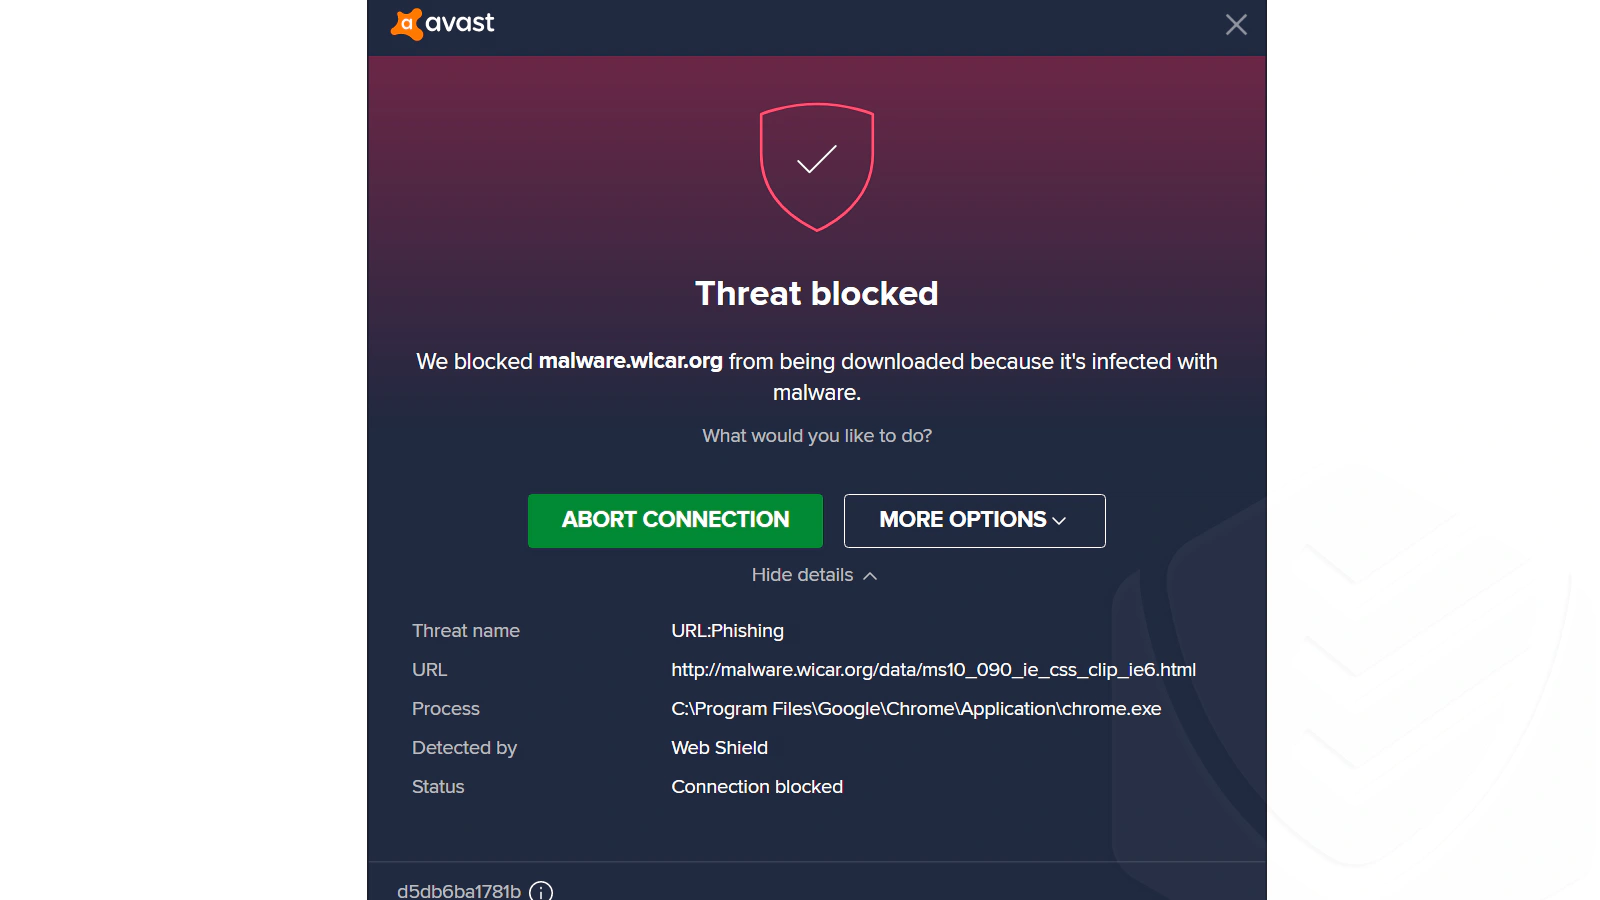 
O Avast bloqueou o wicar.org